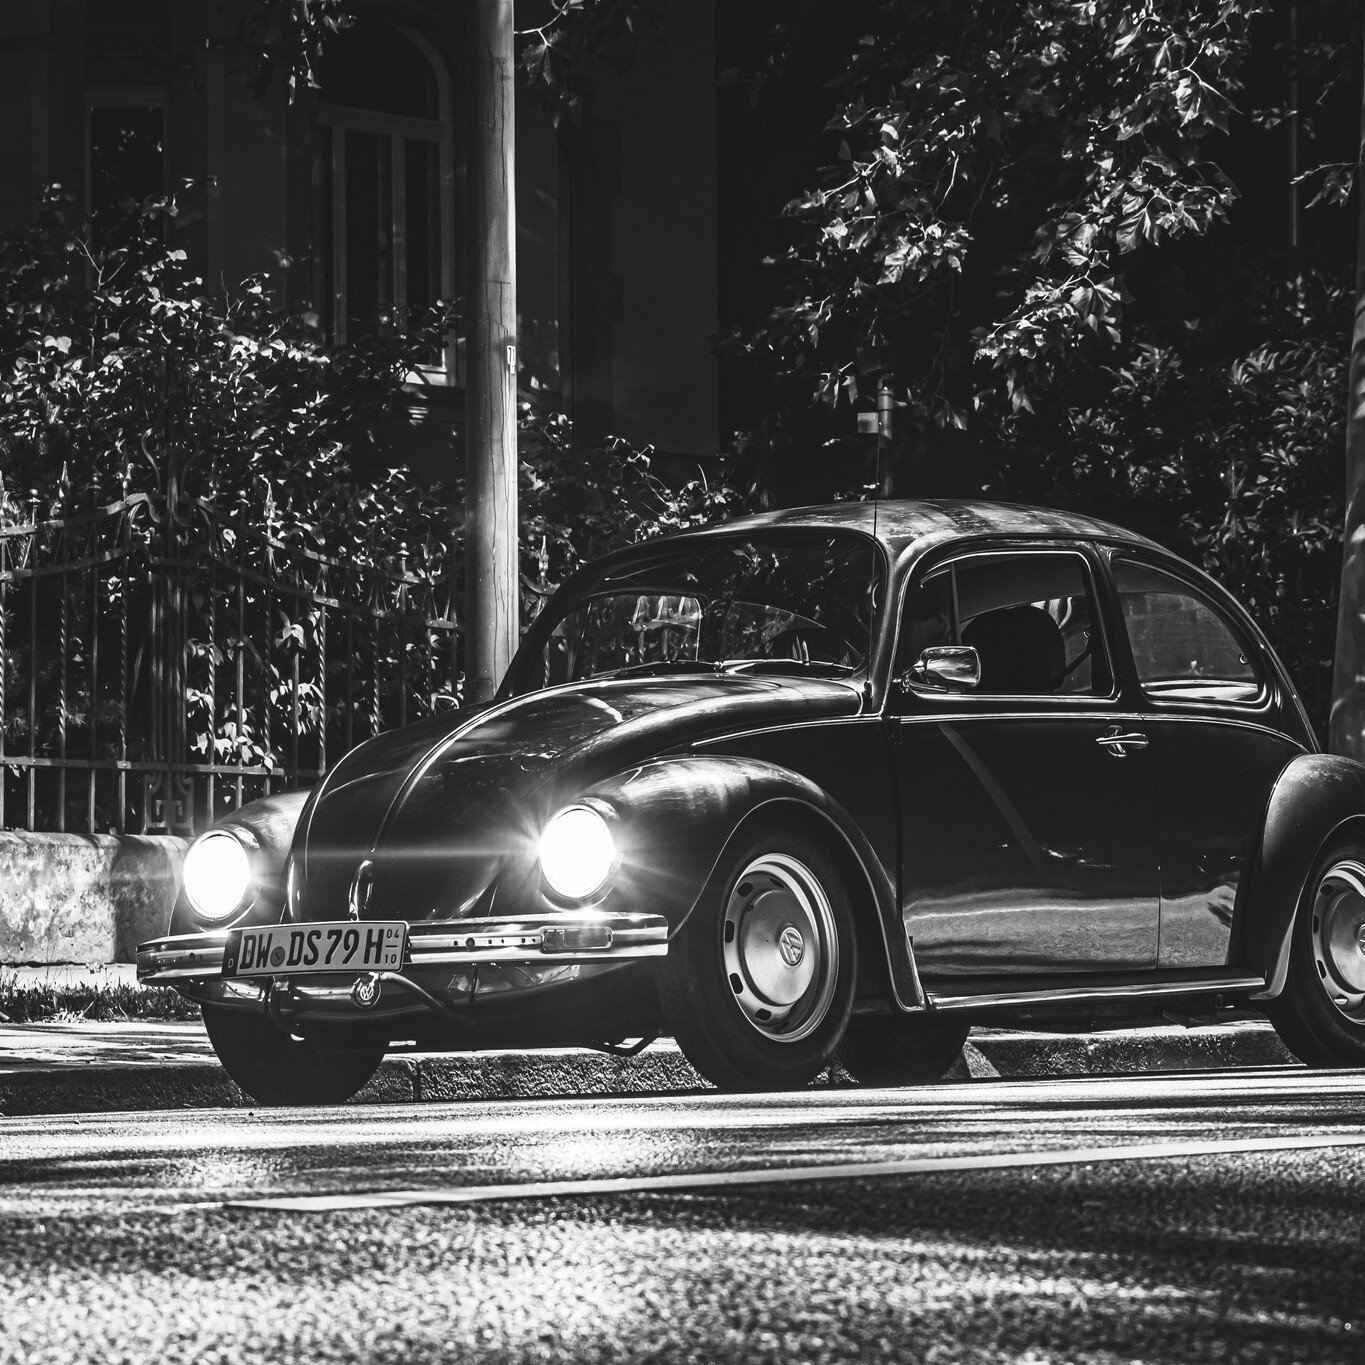 🇬🇧 night owls ✨🌙🌃🌌🚗...

🇩🇪 Nachtschwärmer✨🌙🌃🌌🚗...

🚗: VW Käfer 1200 on Wheels P29

📸: @tobias_vogt_fotografie 
...